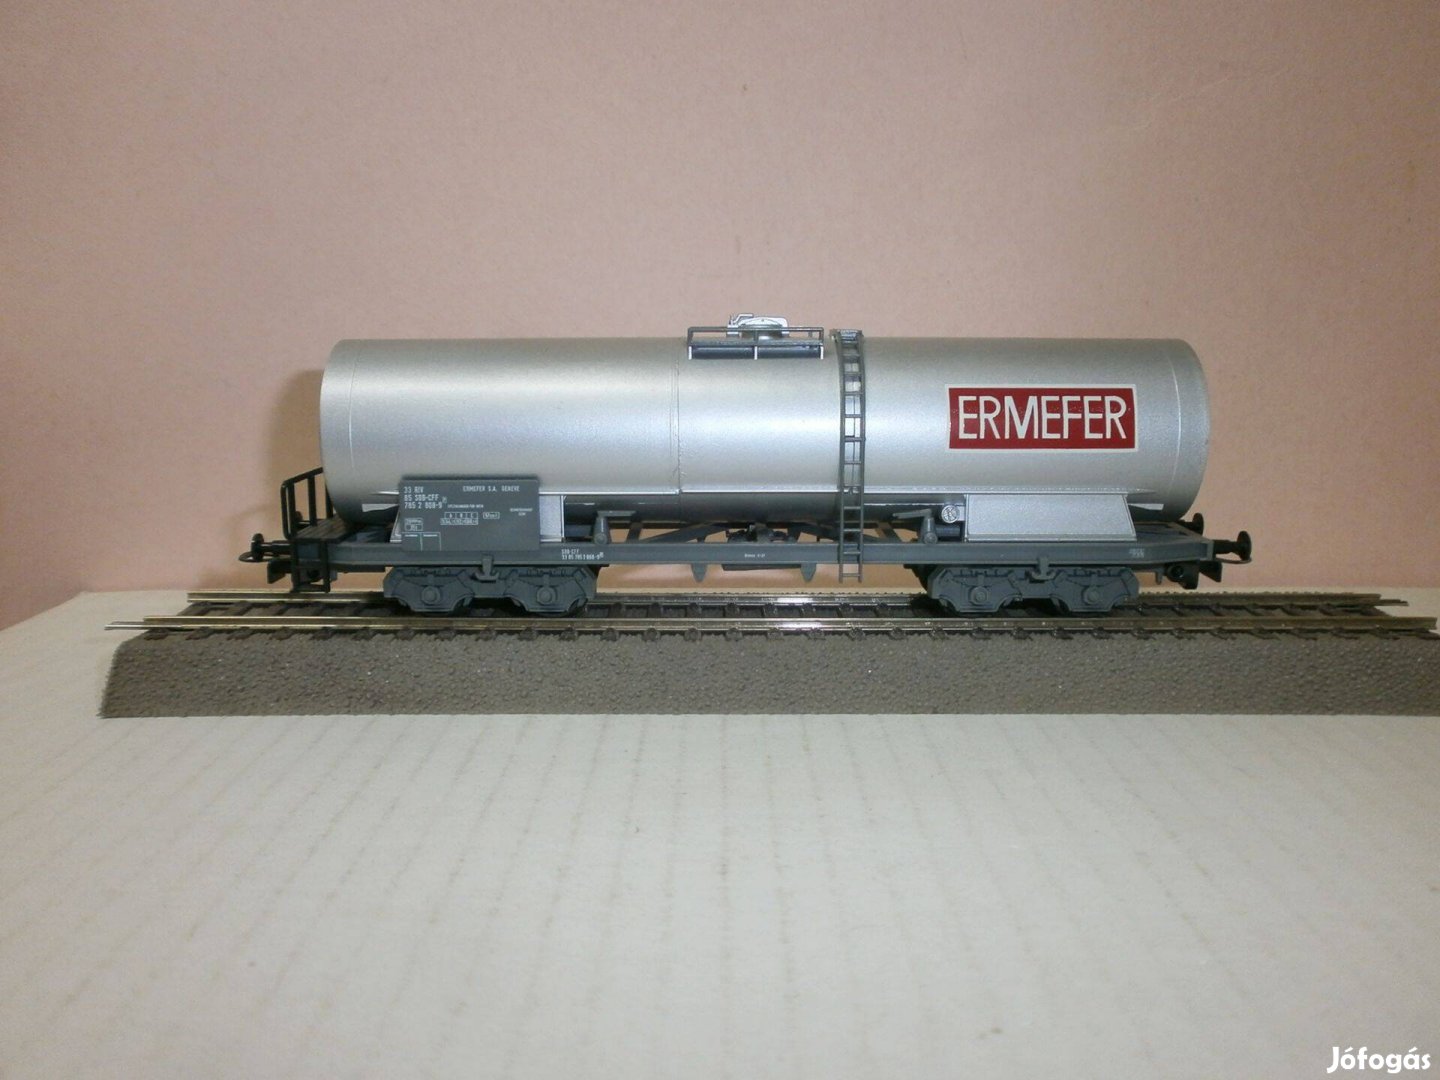 Liliput - SBB-CFF "Ermefer" -tartály kocsi - H0 - ( W-45)